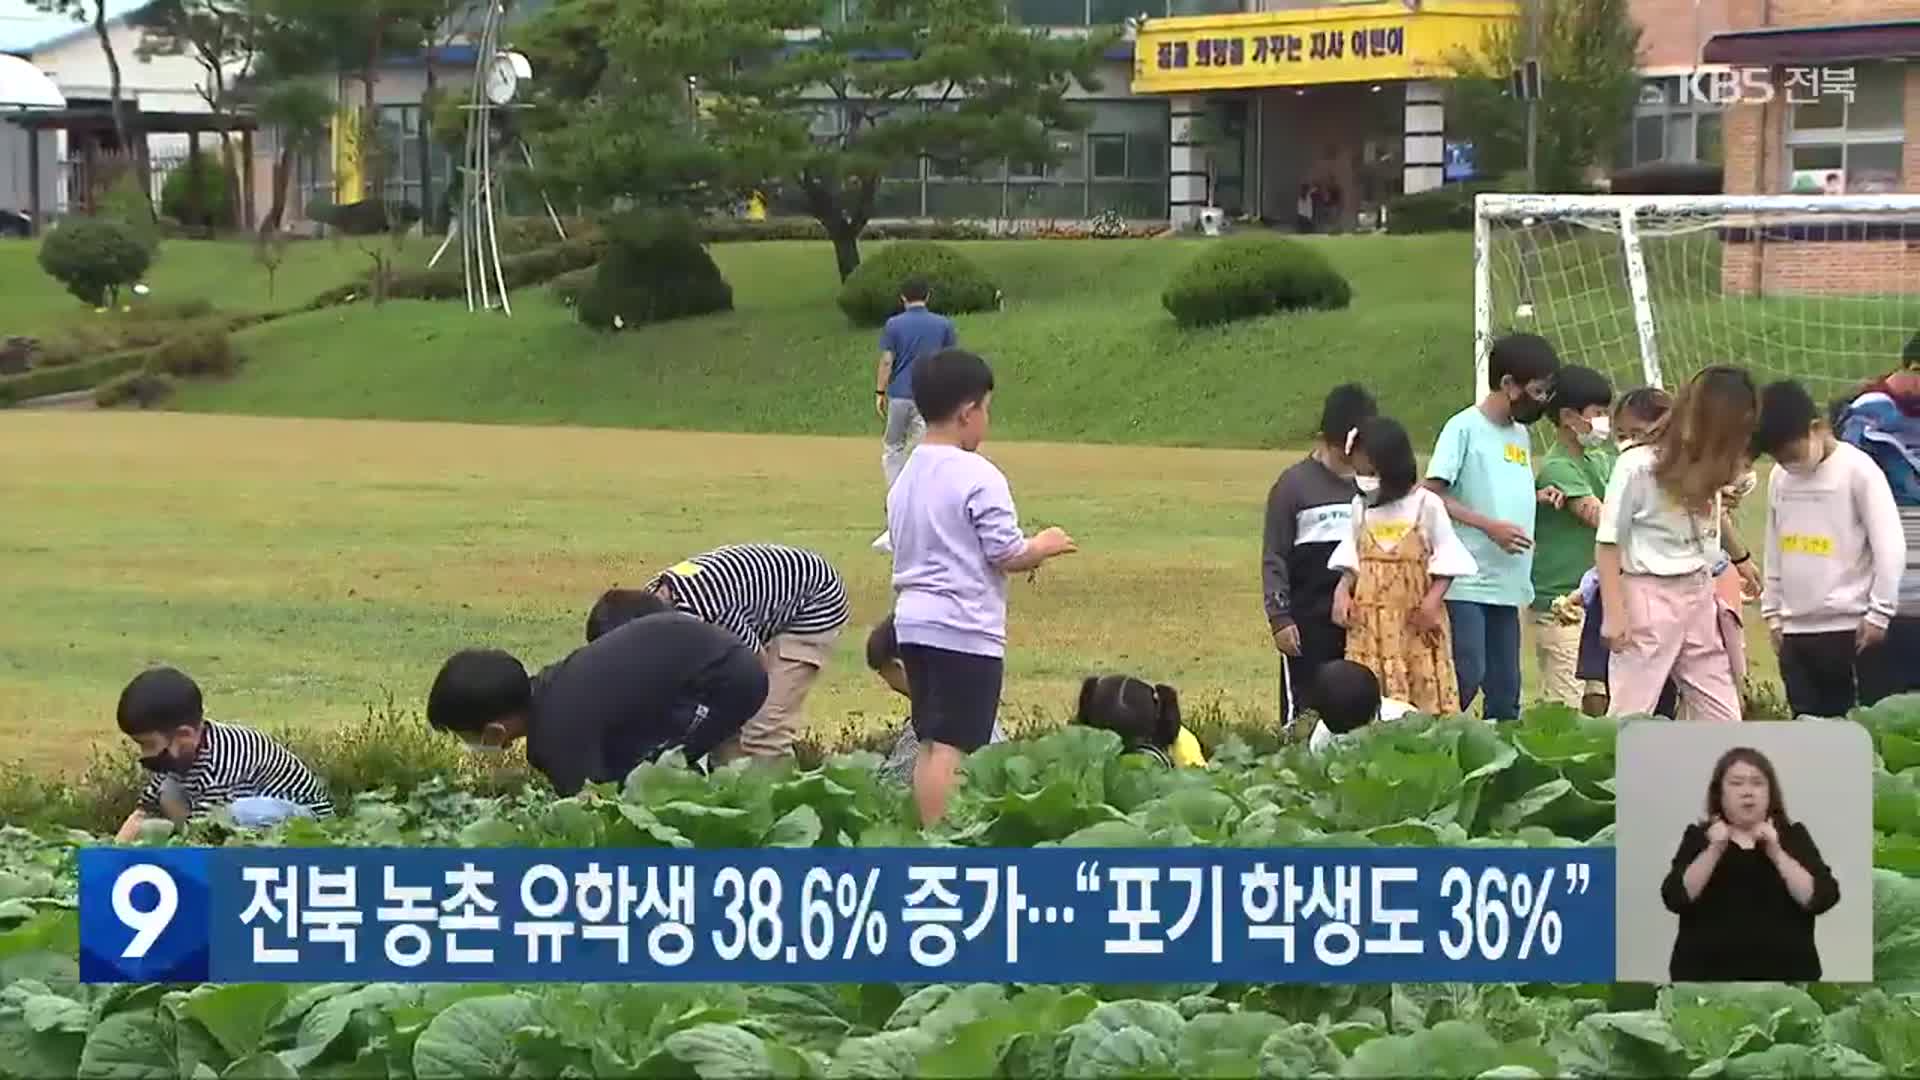 전북 농촌 유학생 38.6% 증가…“포기 학생도 36%”